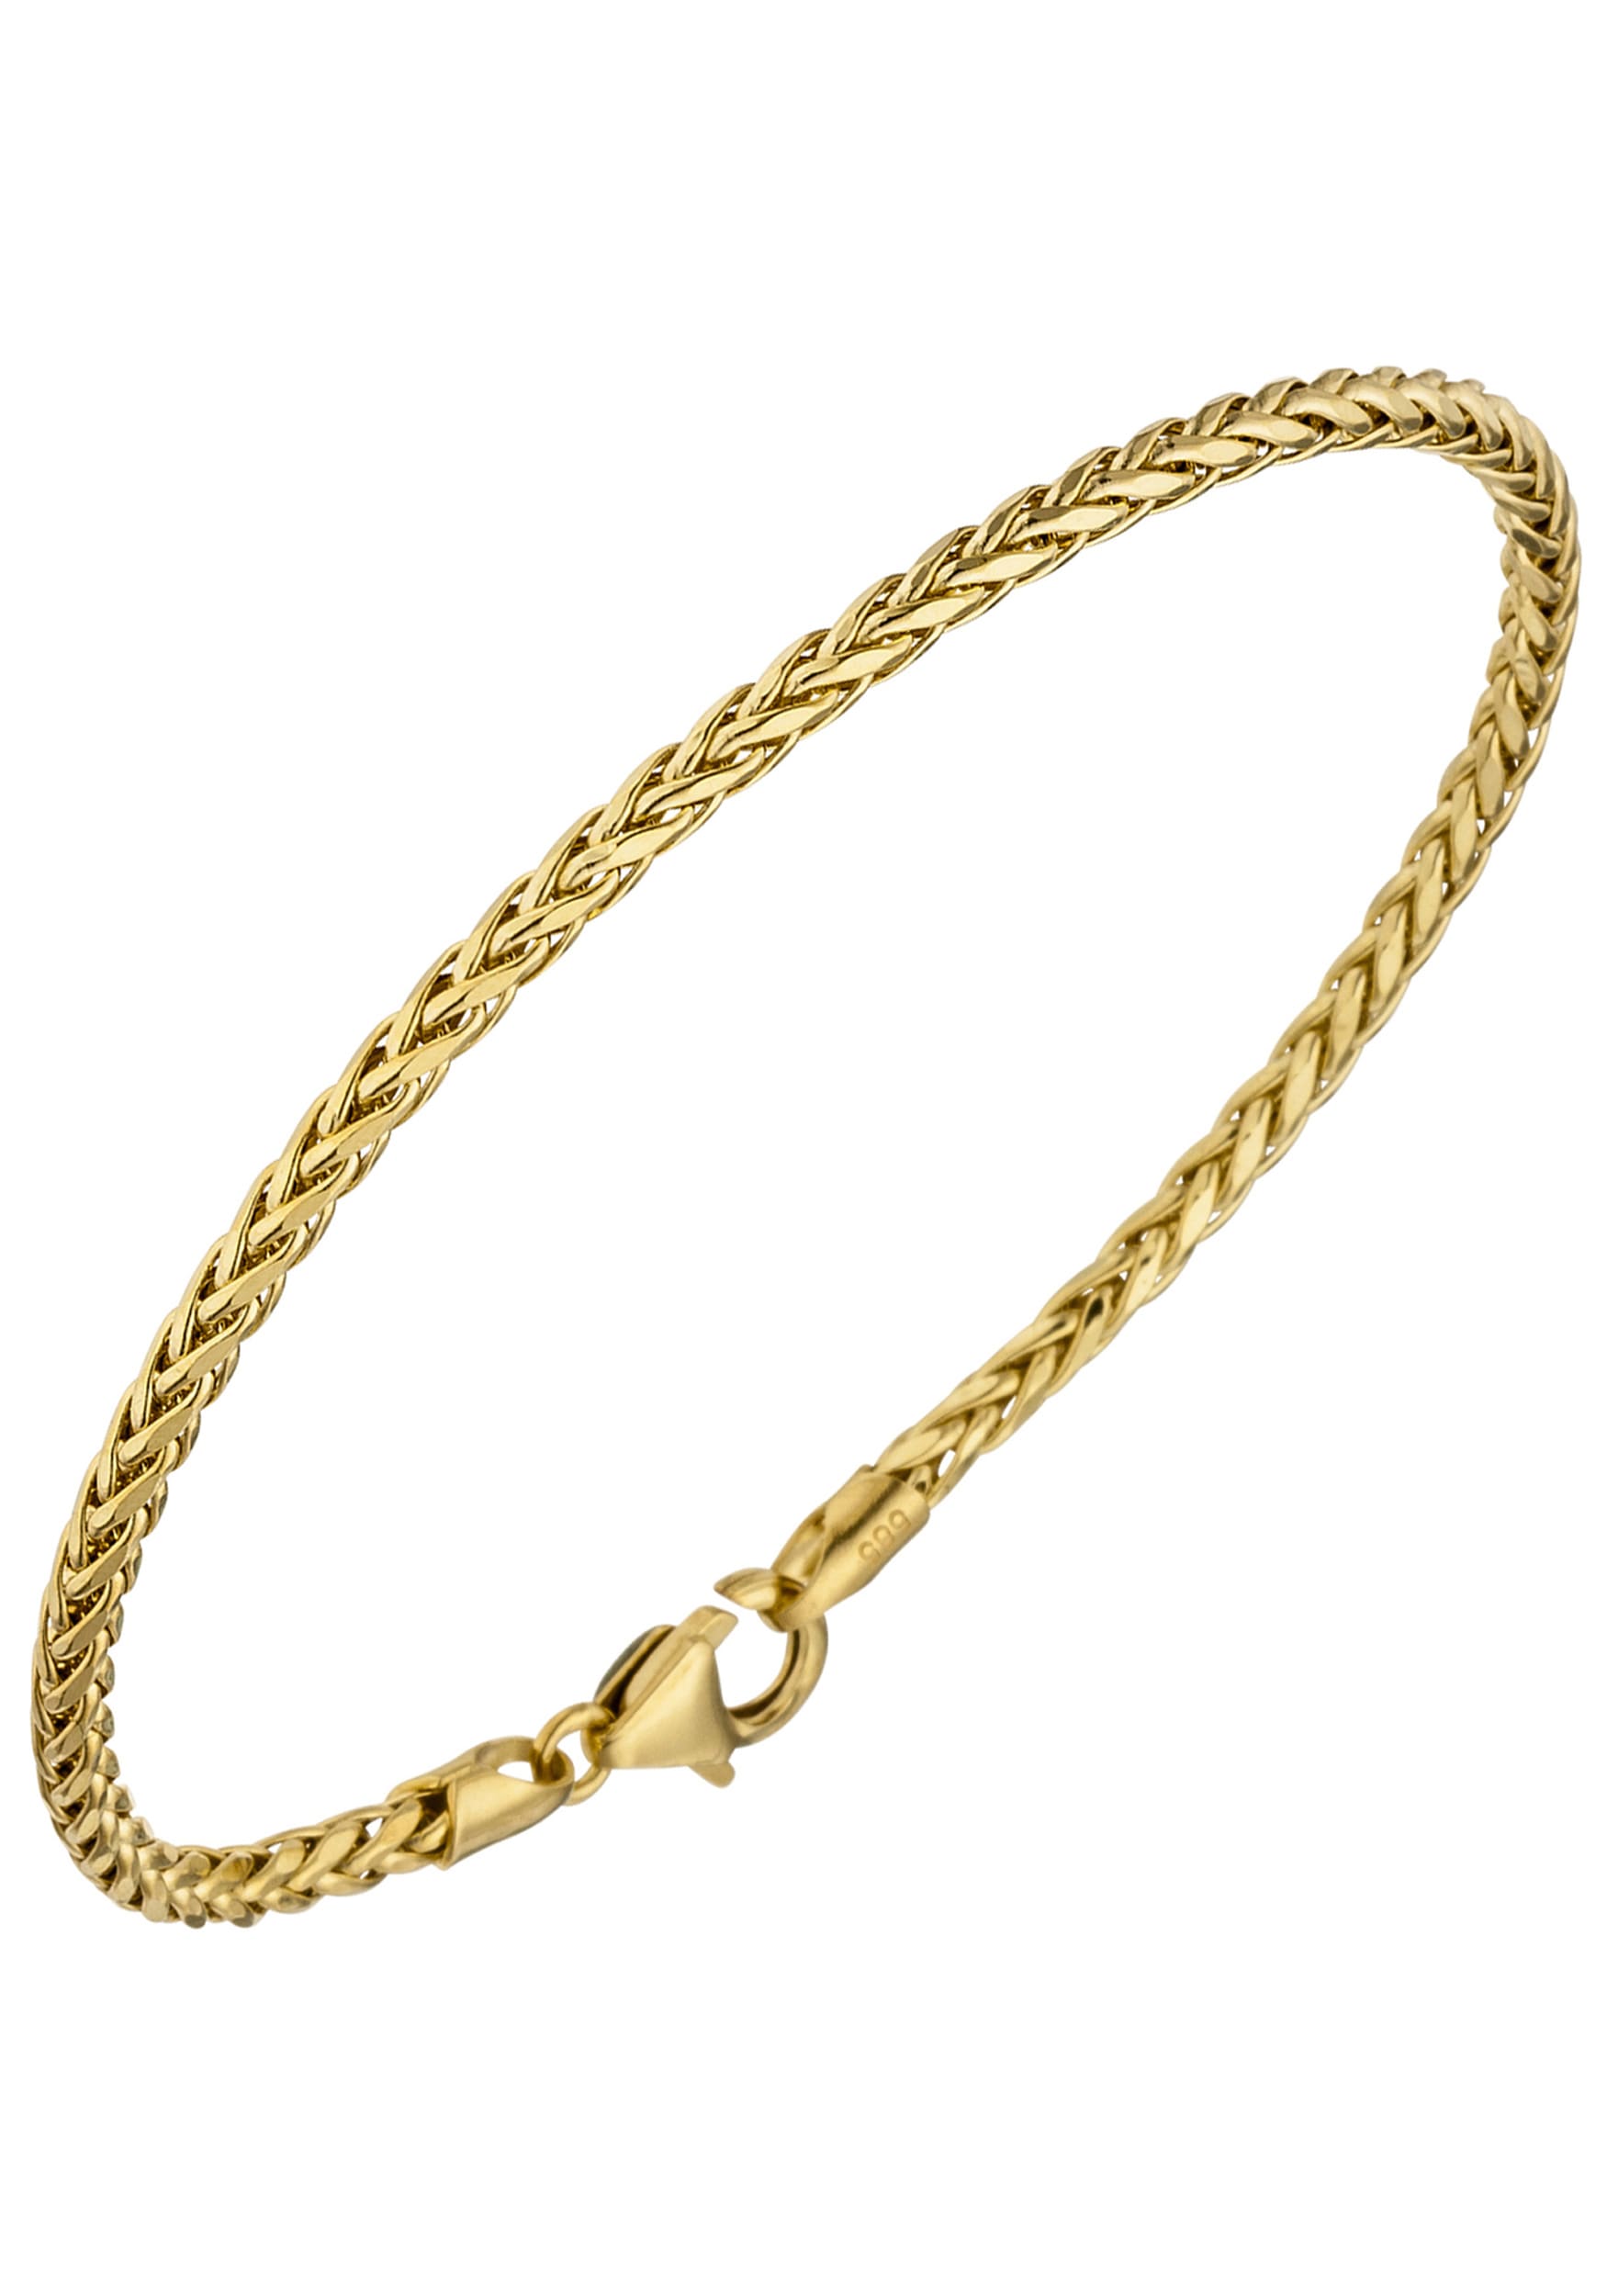 Goldarmband, Zopfarmband 585 Gold 19 cm